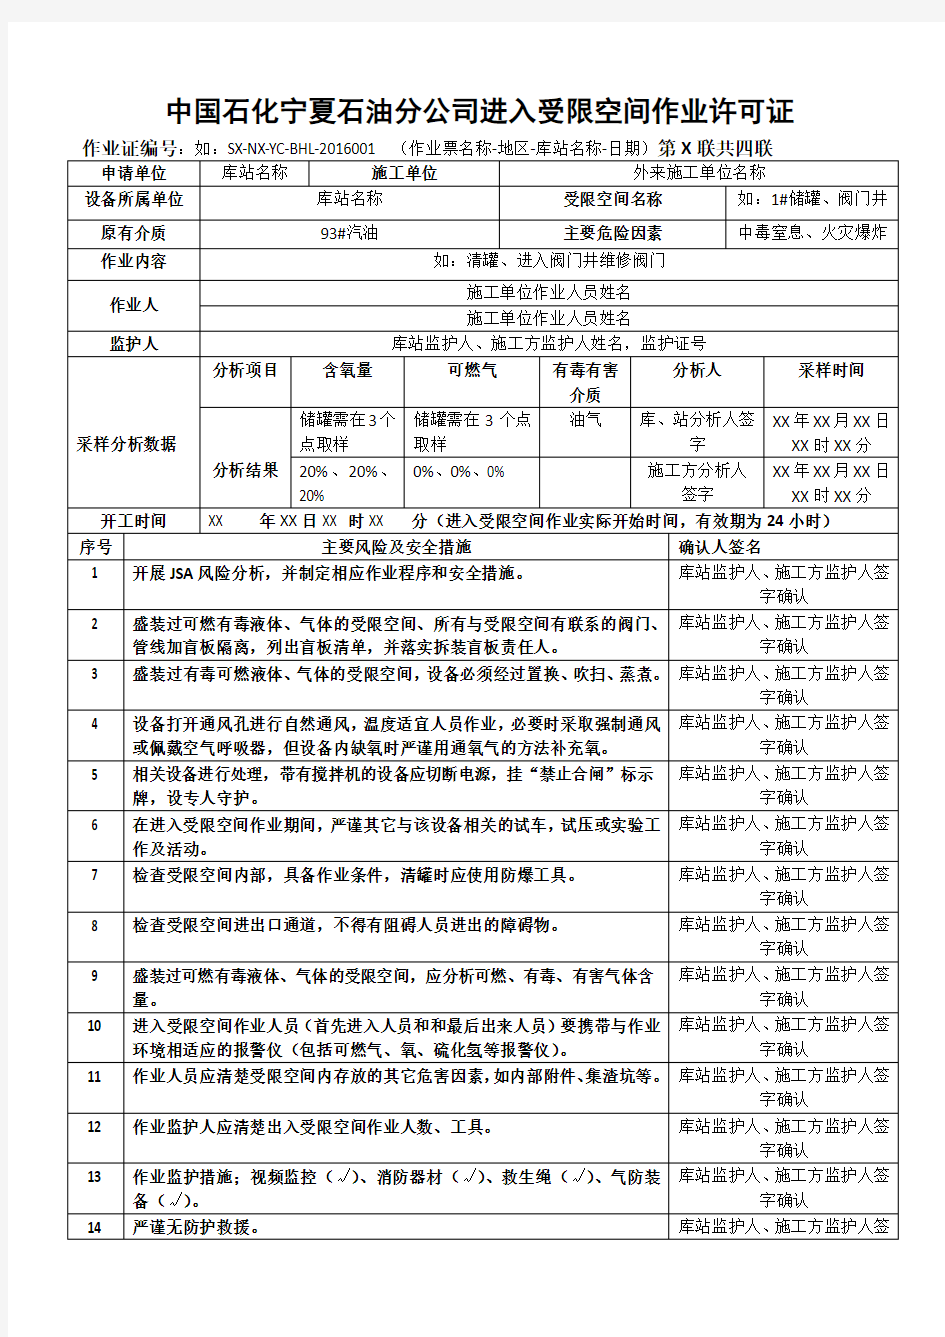 中国石化加油站进入受限空间作业许可证(填写模板)